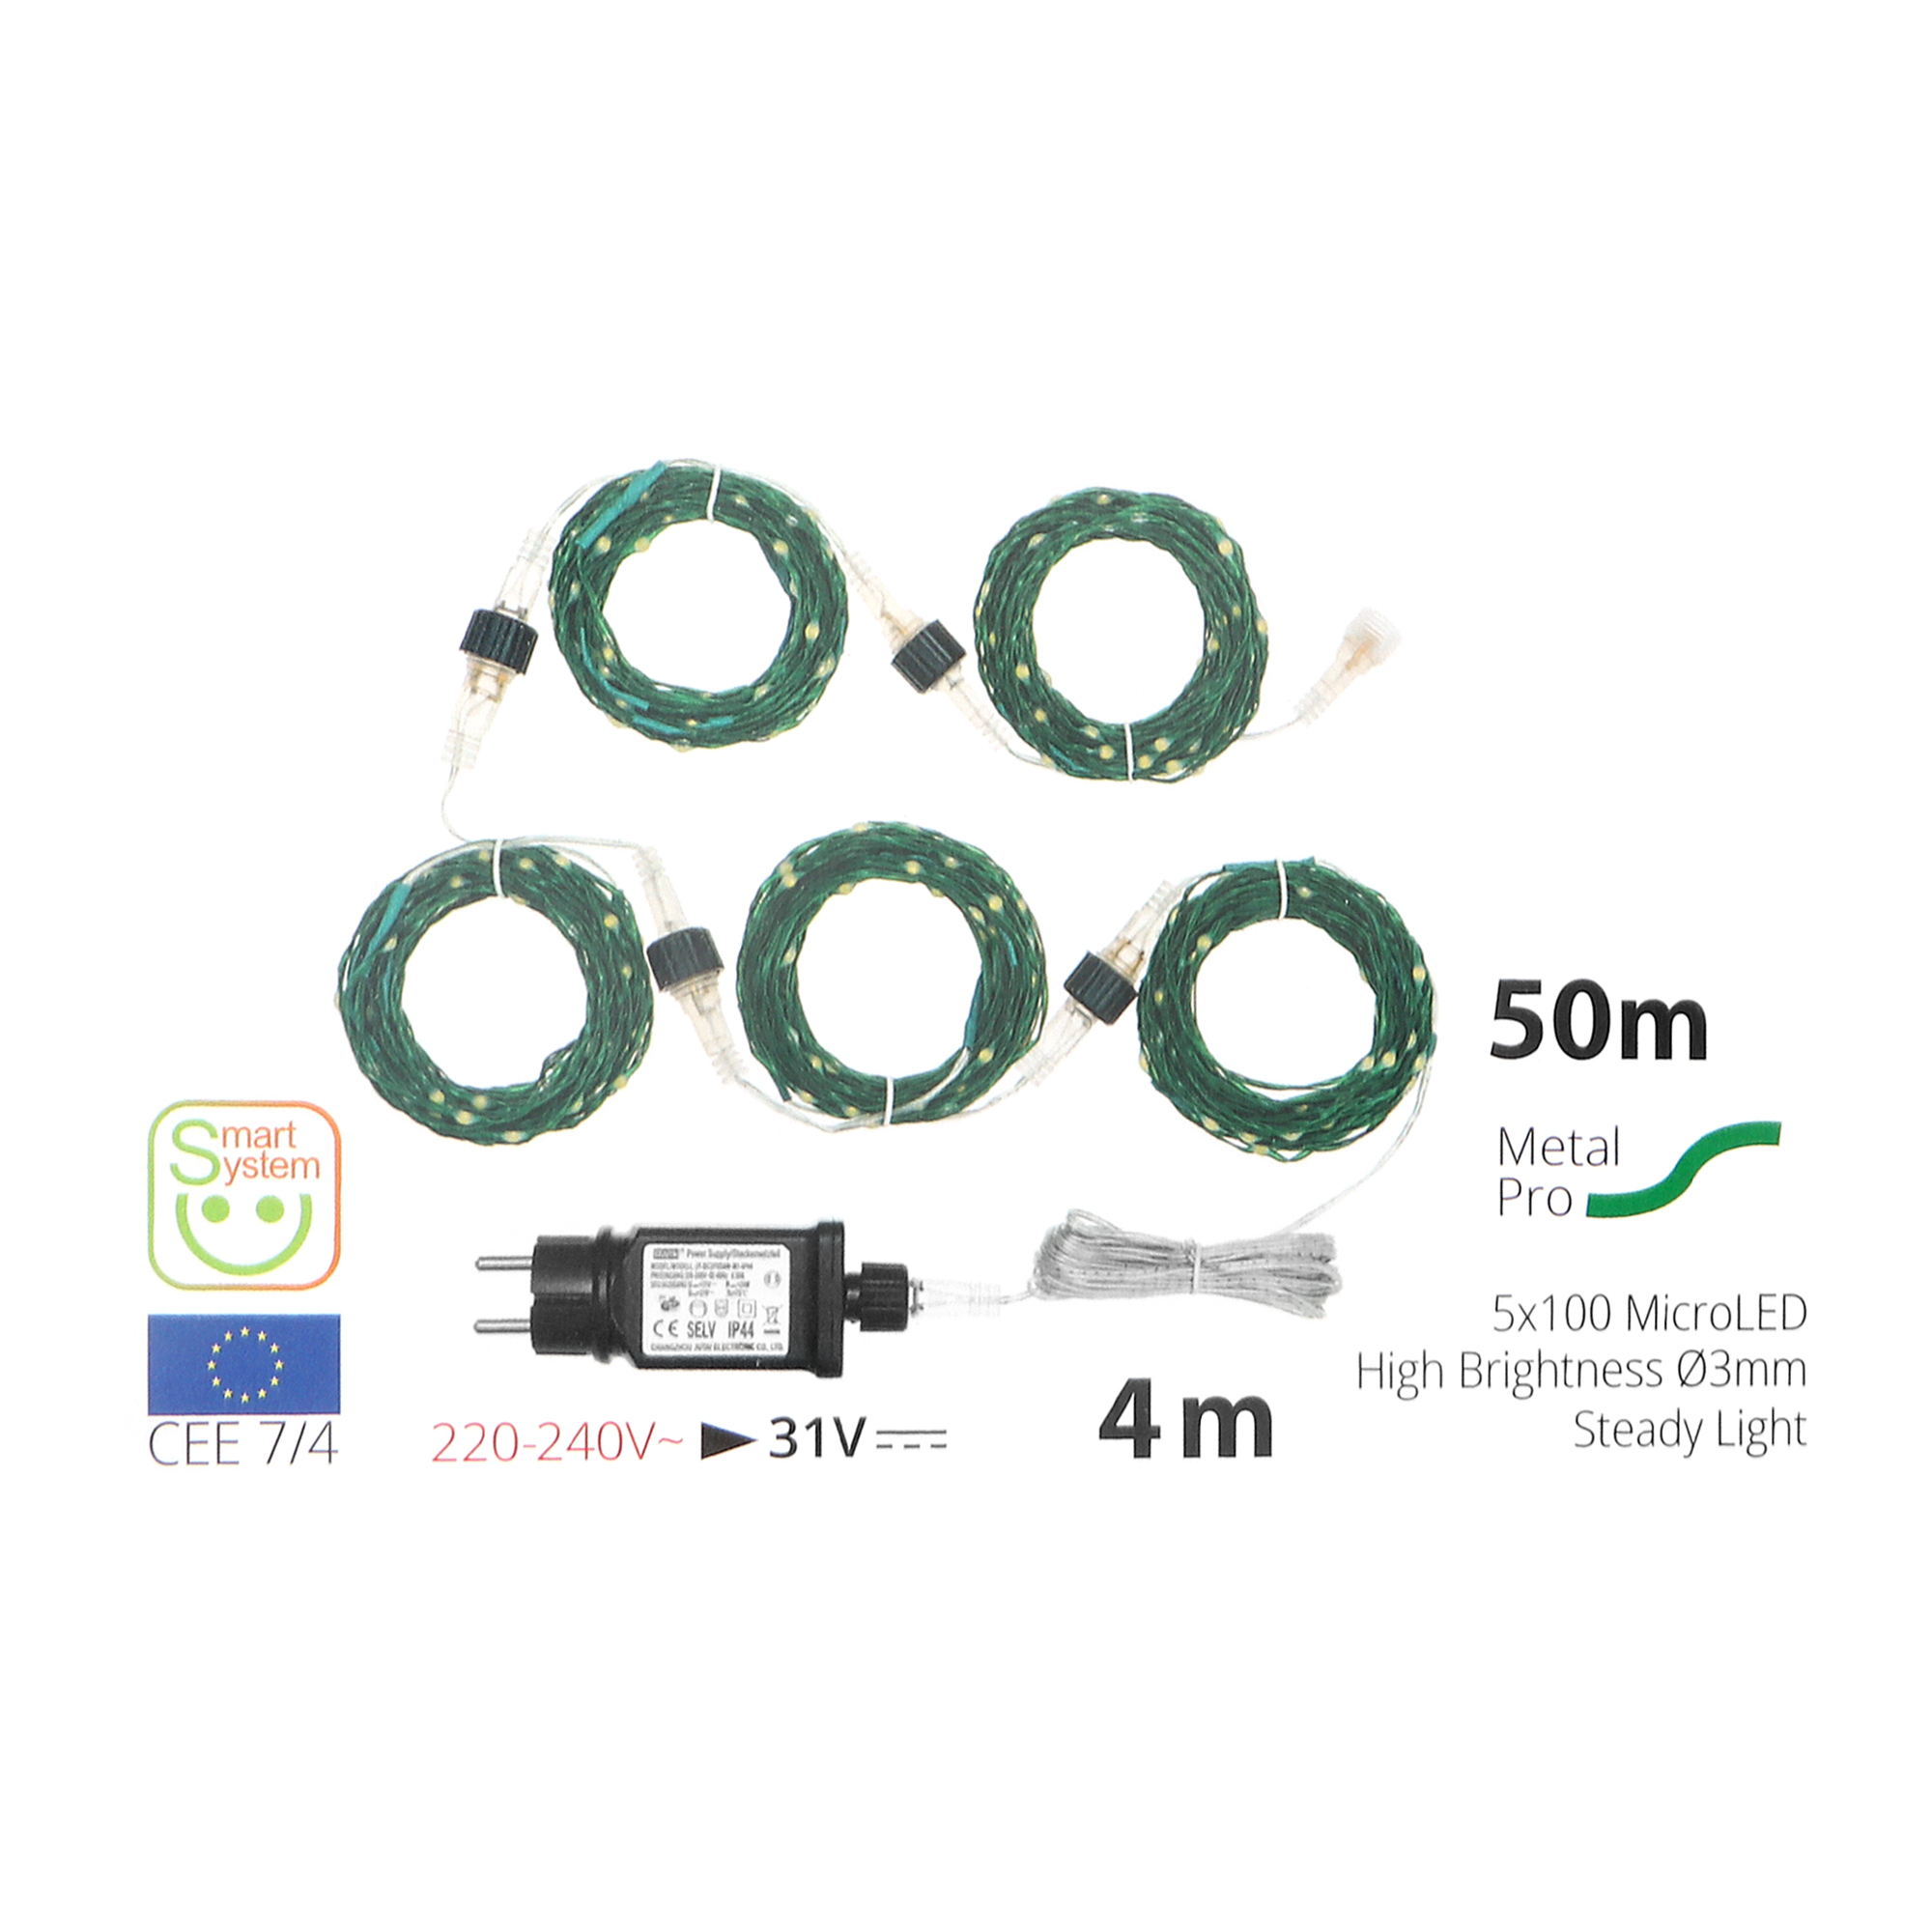 Электрогирлянда Lotti Профессионал 50 м 500 MicroLEDS зеленый кабель, цвет теплый белый - фото 7